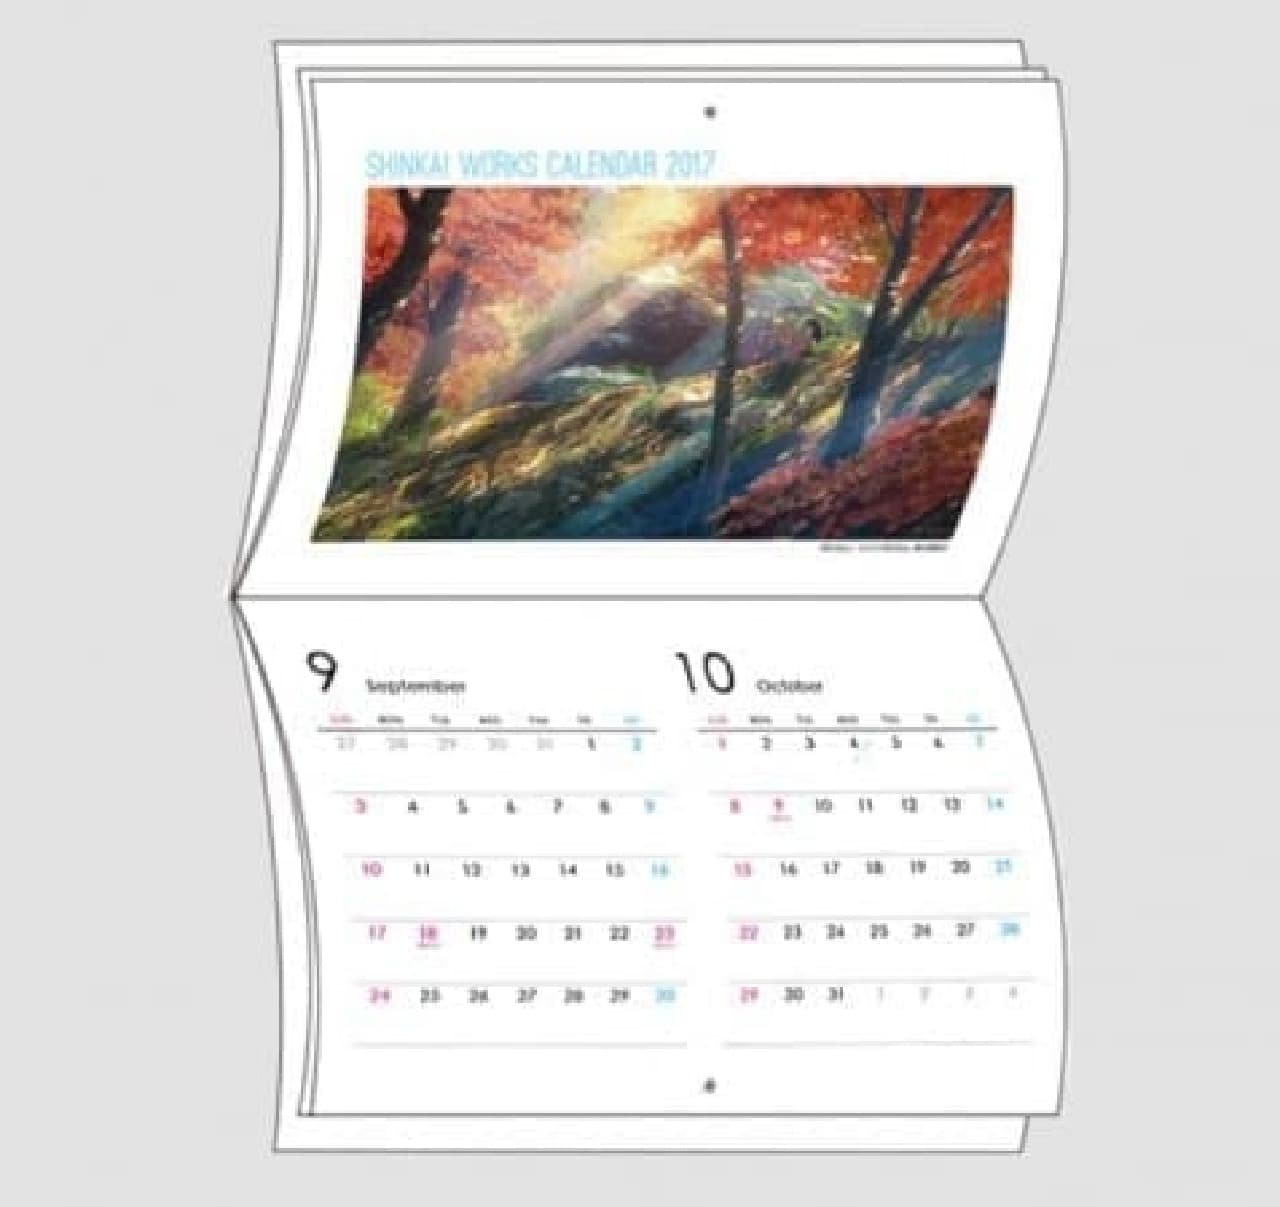 2017 calendar directed by Makoto Shinkai